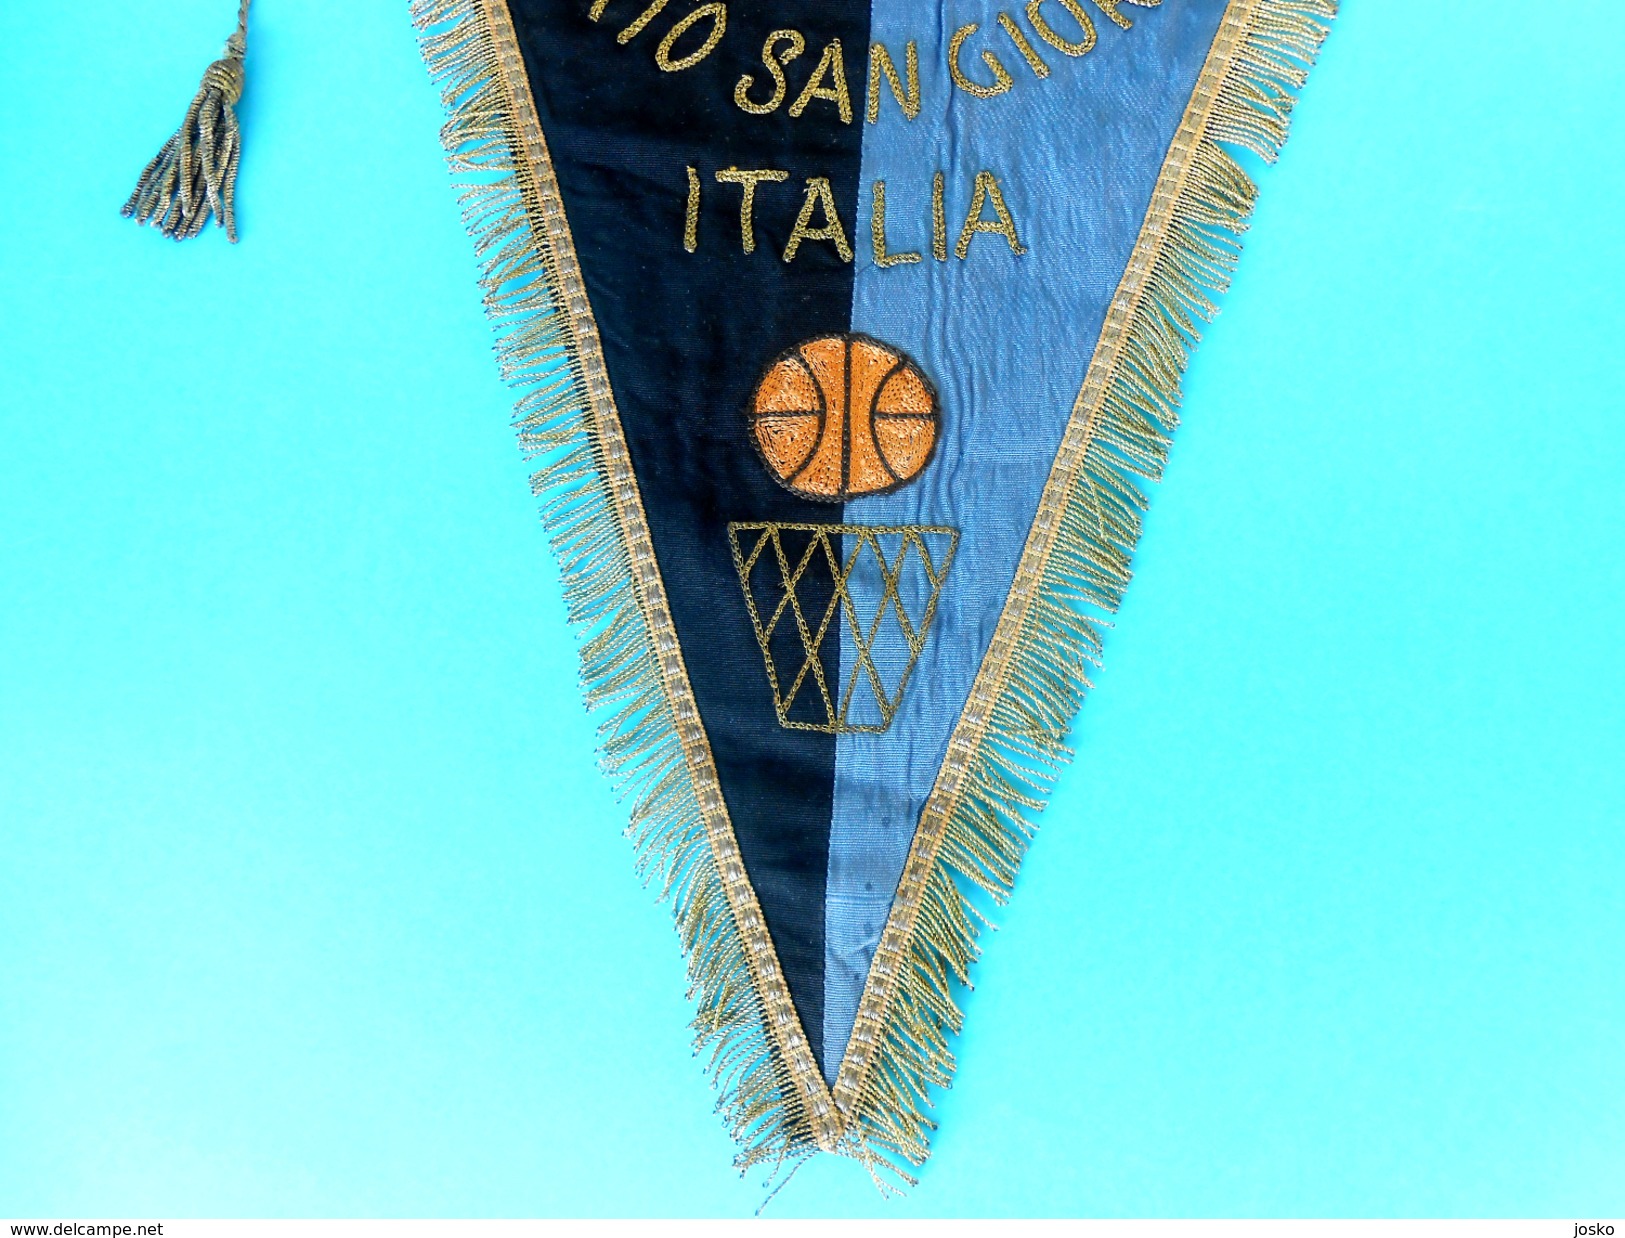 US SANGIORGESE PORTO SAN GIORGIO Marche - Italy Basketball Vintage Pennant Fanion Flag Bandierina Pallacanestro Italia - Uniformes, Recordatorios & Misc